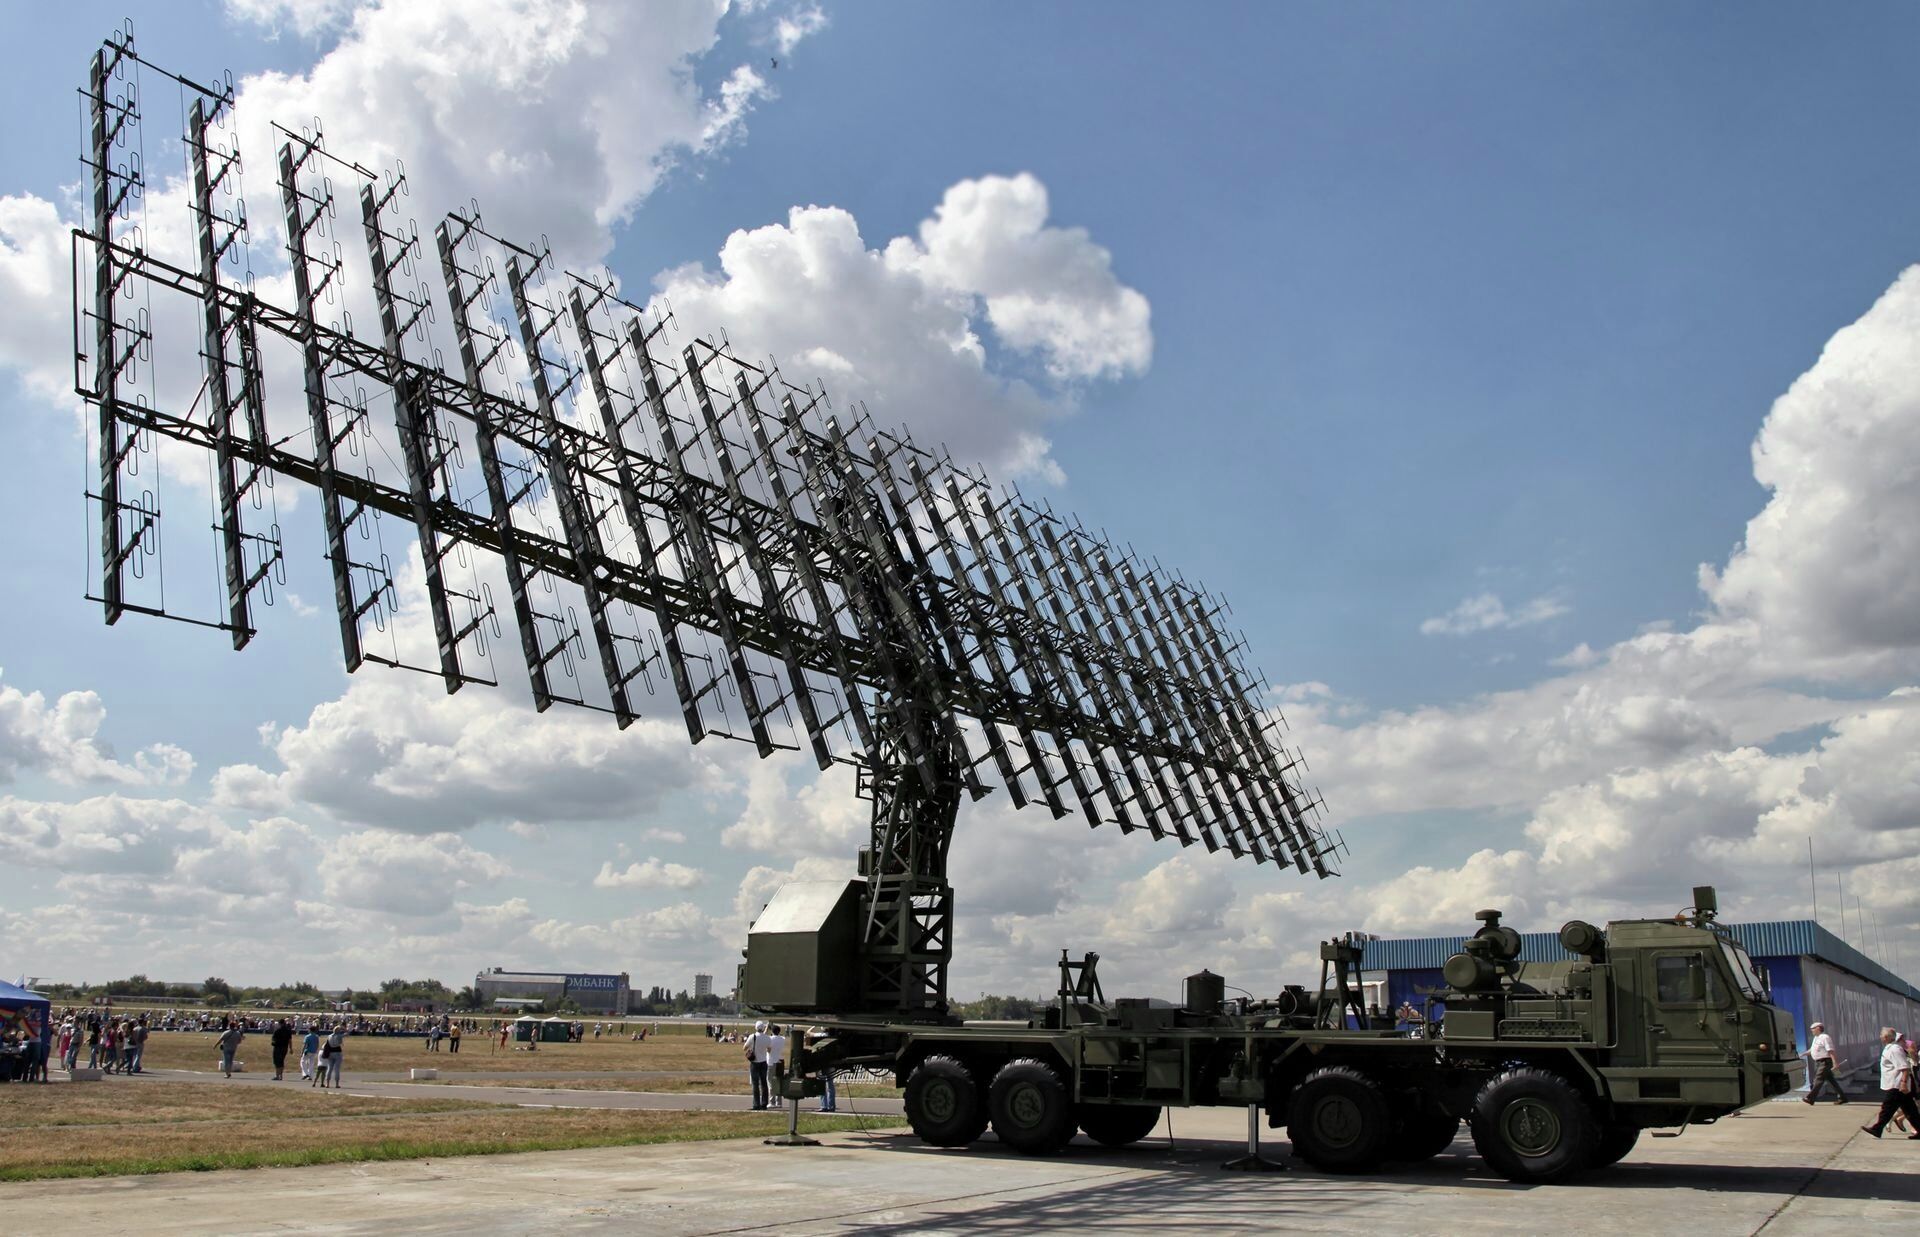 Sistema de radar bistático Struna-1 russo representa ameaça para caças furtivos da OTAN, diz mídia - Sputnik Brasil, 1920, 18.06.2021